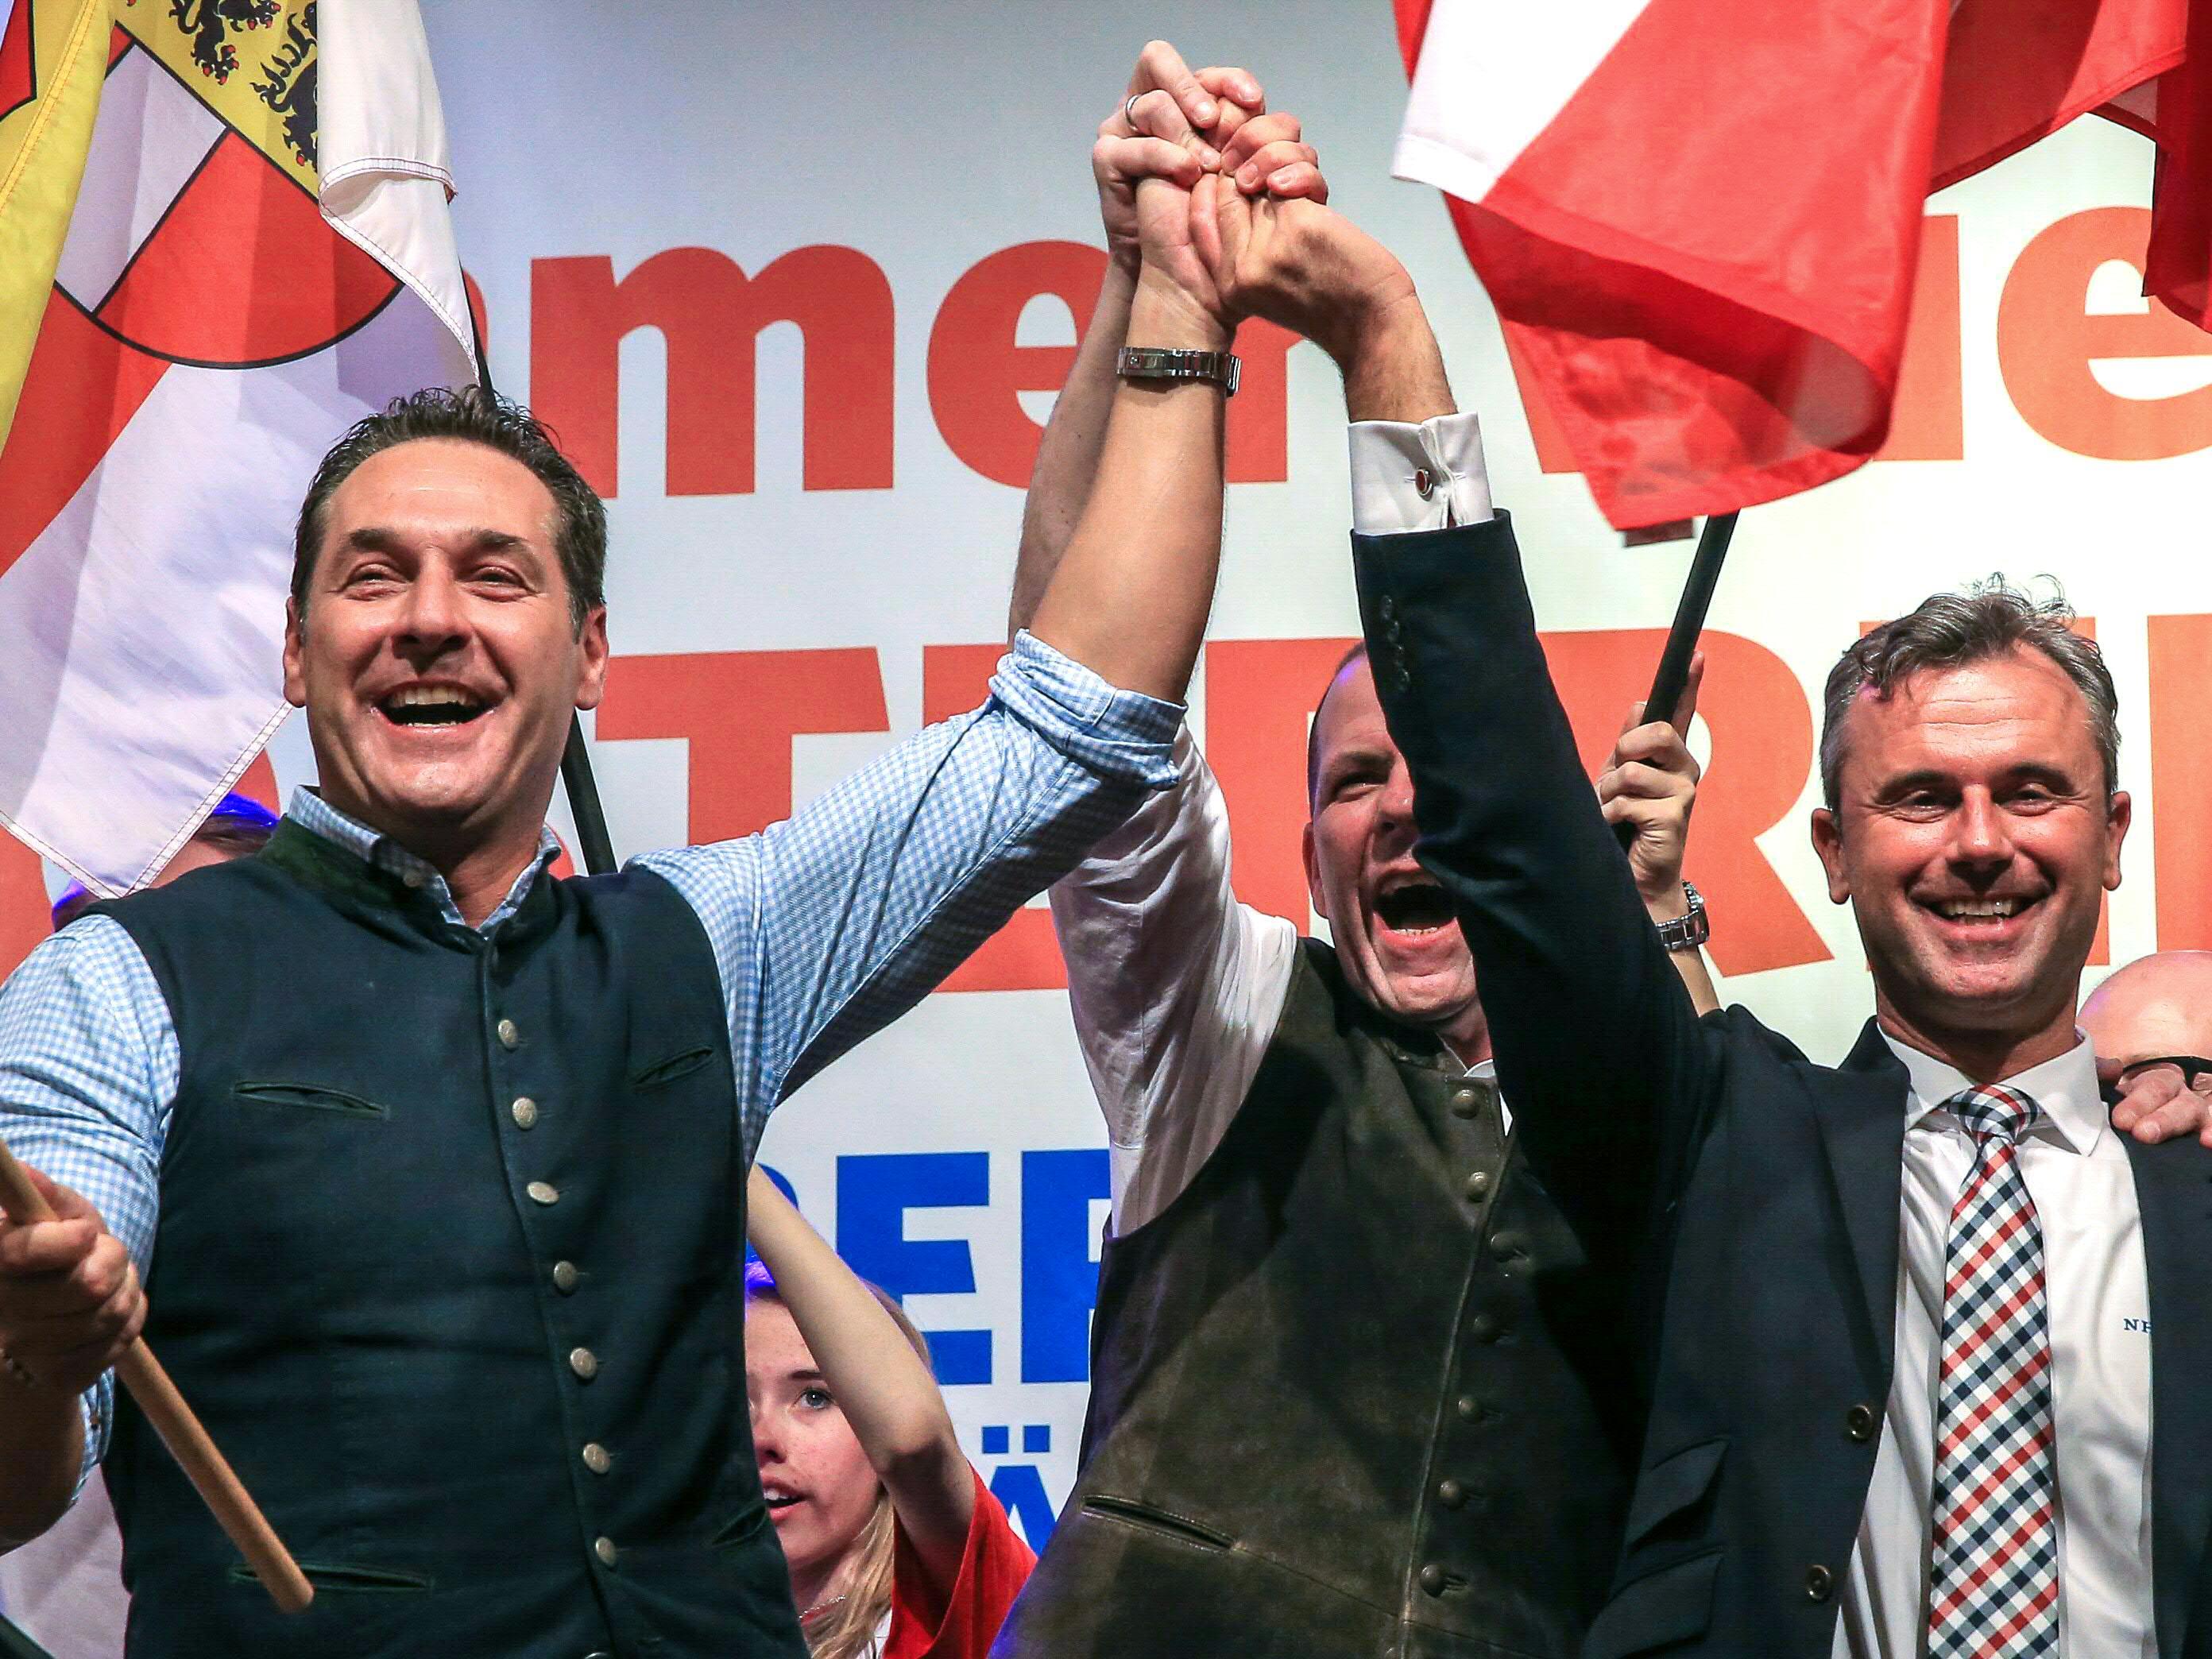 Ein Schweizer Politikexperte warnt vor einer FPÖ-Regierung.